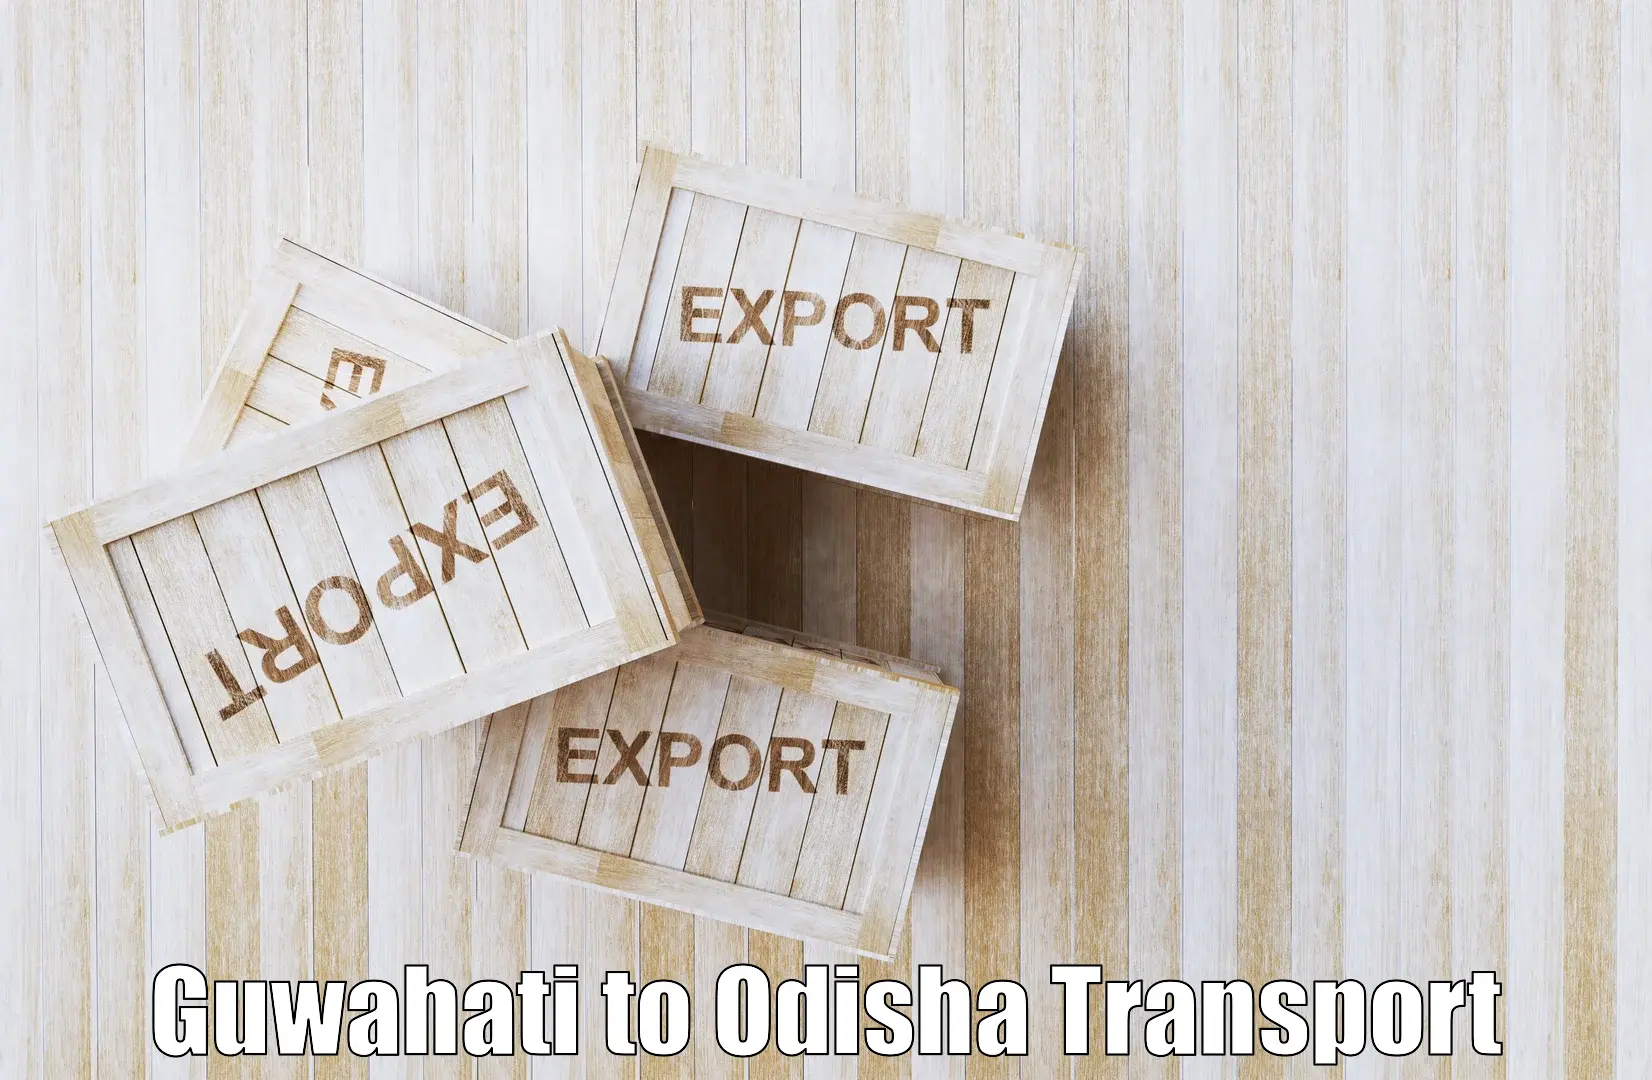 Express transport services in Guwahati to Kesinga